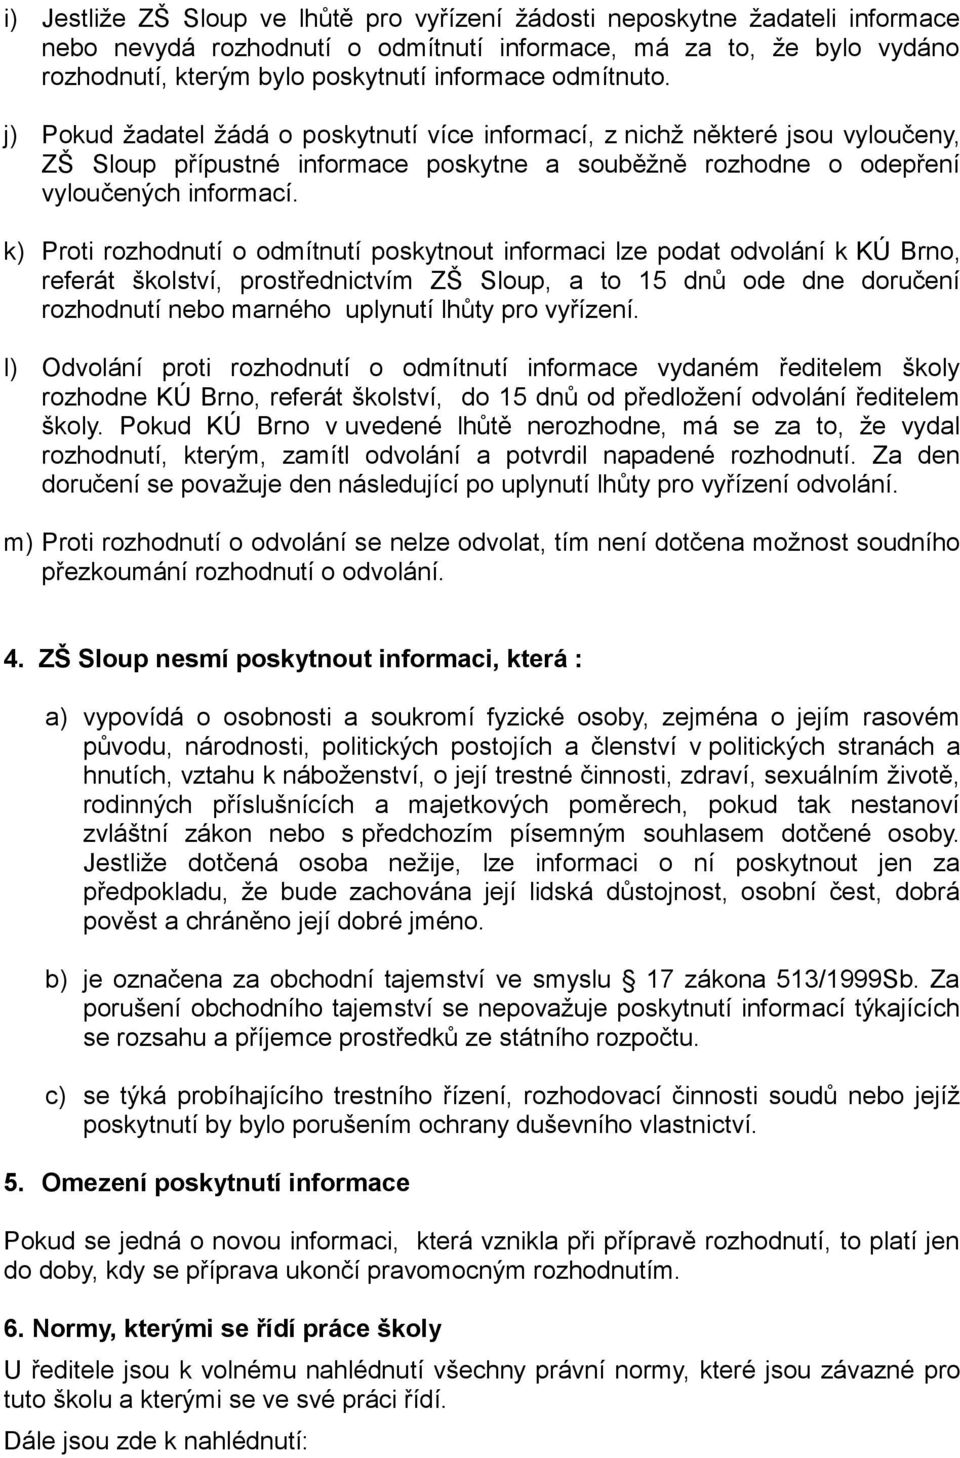 k) Proti rozhodnutí o odmítnutí poskytnout informaci lze podat odvolání k KÚ Brno, referát školství, prostřednictvím ZŠ Sloup, a to 15 dnů ode dne doručení rozhodnutí nebo marného uplynutí lhůty pro